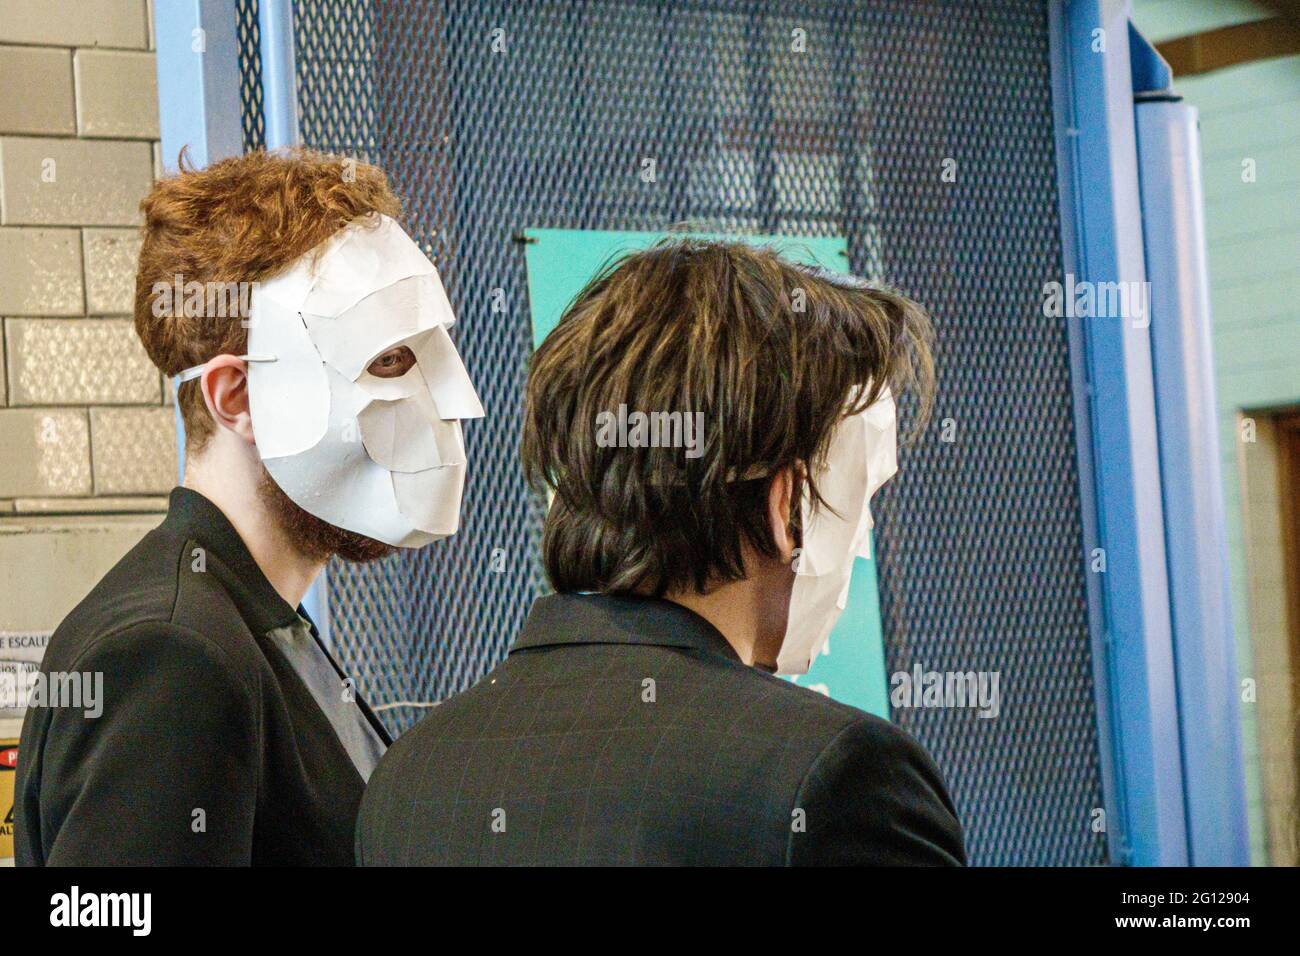 Argentine Buenos Aires homme jeune adulte vêtu de papier blanc masque facial acteurs de couverture Banque D'Images